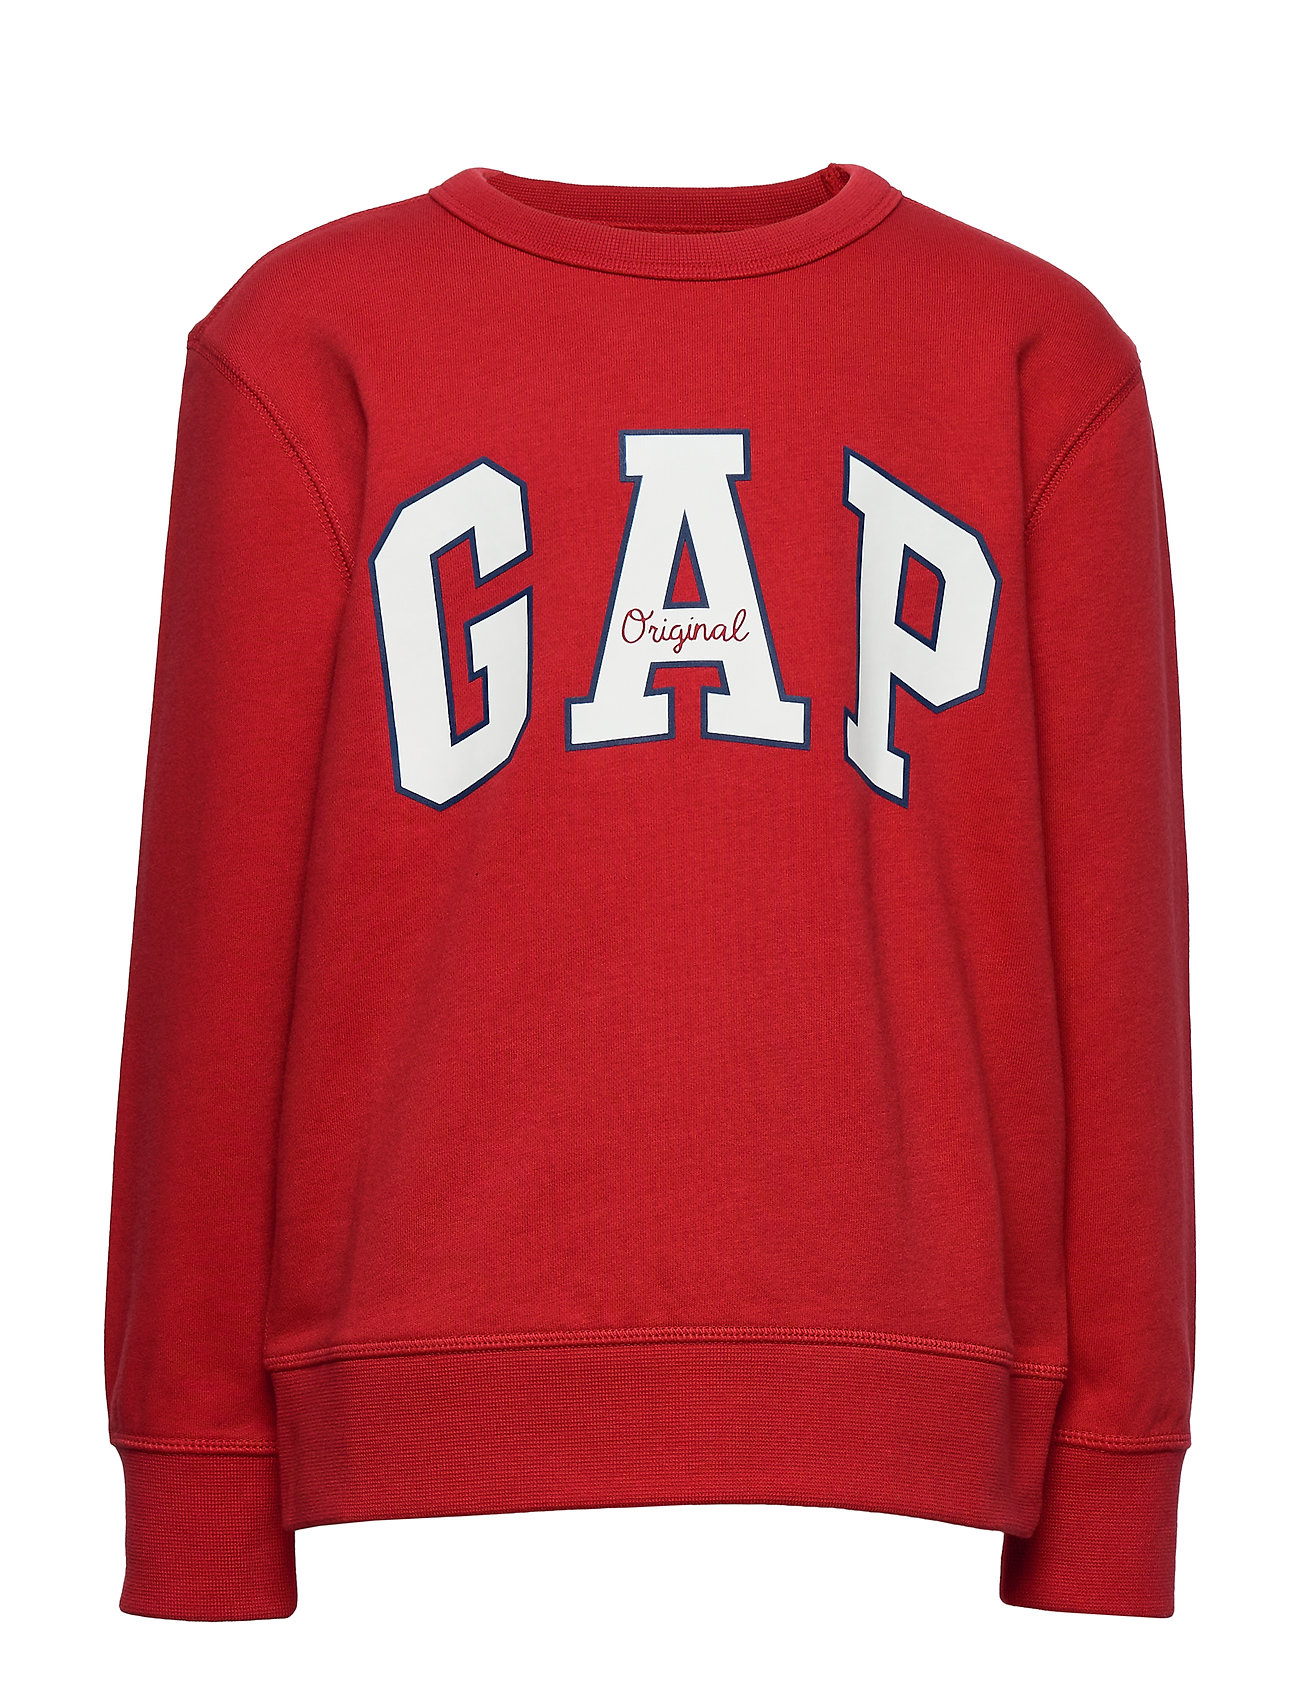 stang eksistens Prøv det GAP sweatshirts – Intl Logo Ft Crew Sweatshirt Trøje Rød GAP til børn i Blå  - Pashion.dk